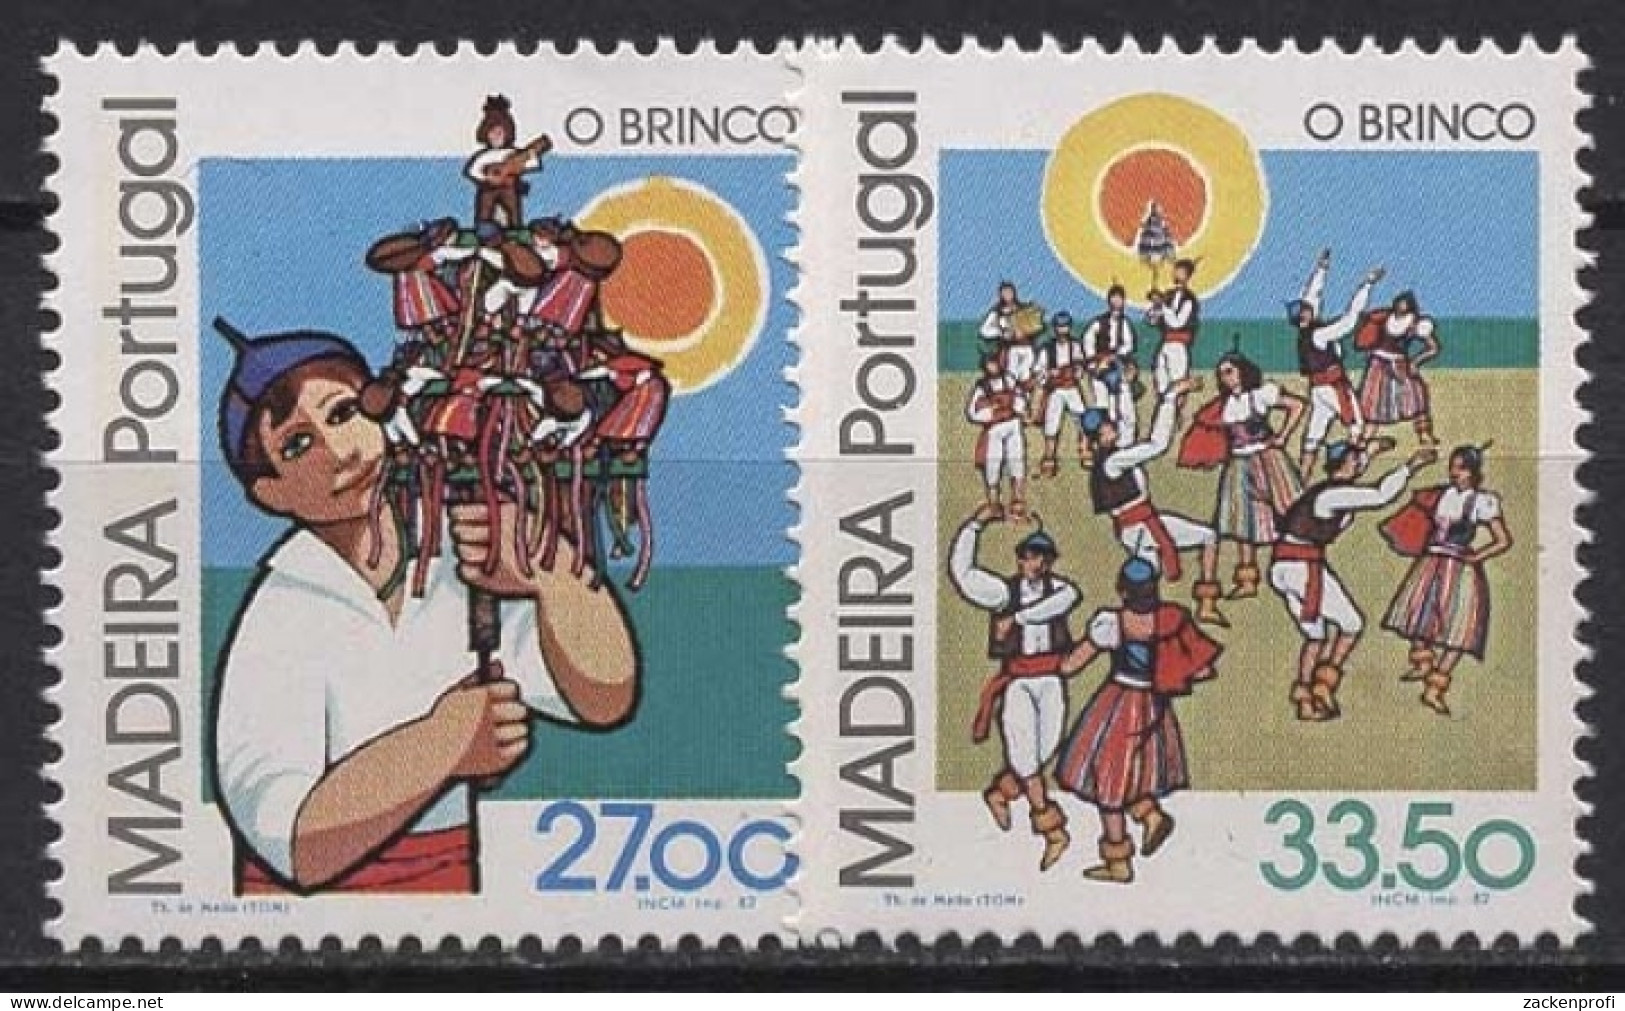 Portugal - Madeira 1982 Regionale Volksbräuche Brinco 82/83 Postfrisch - Madeira